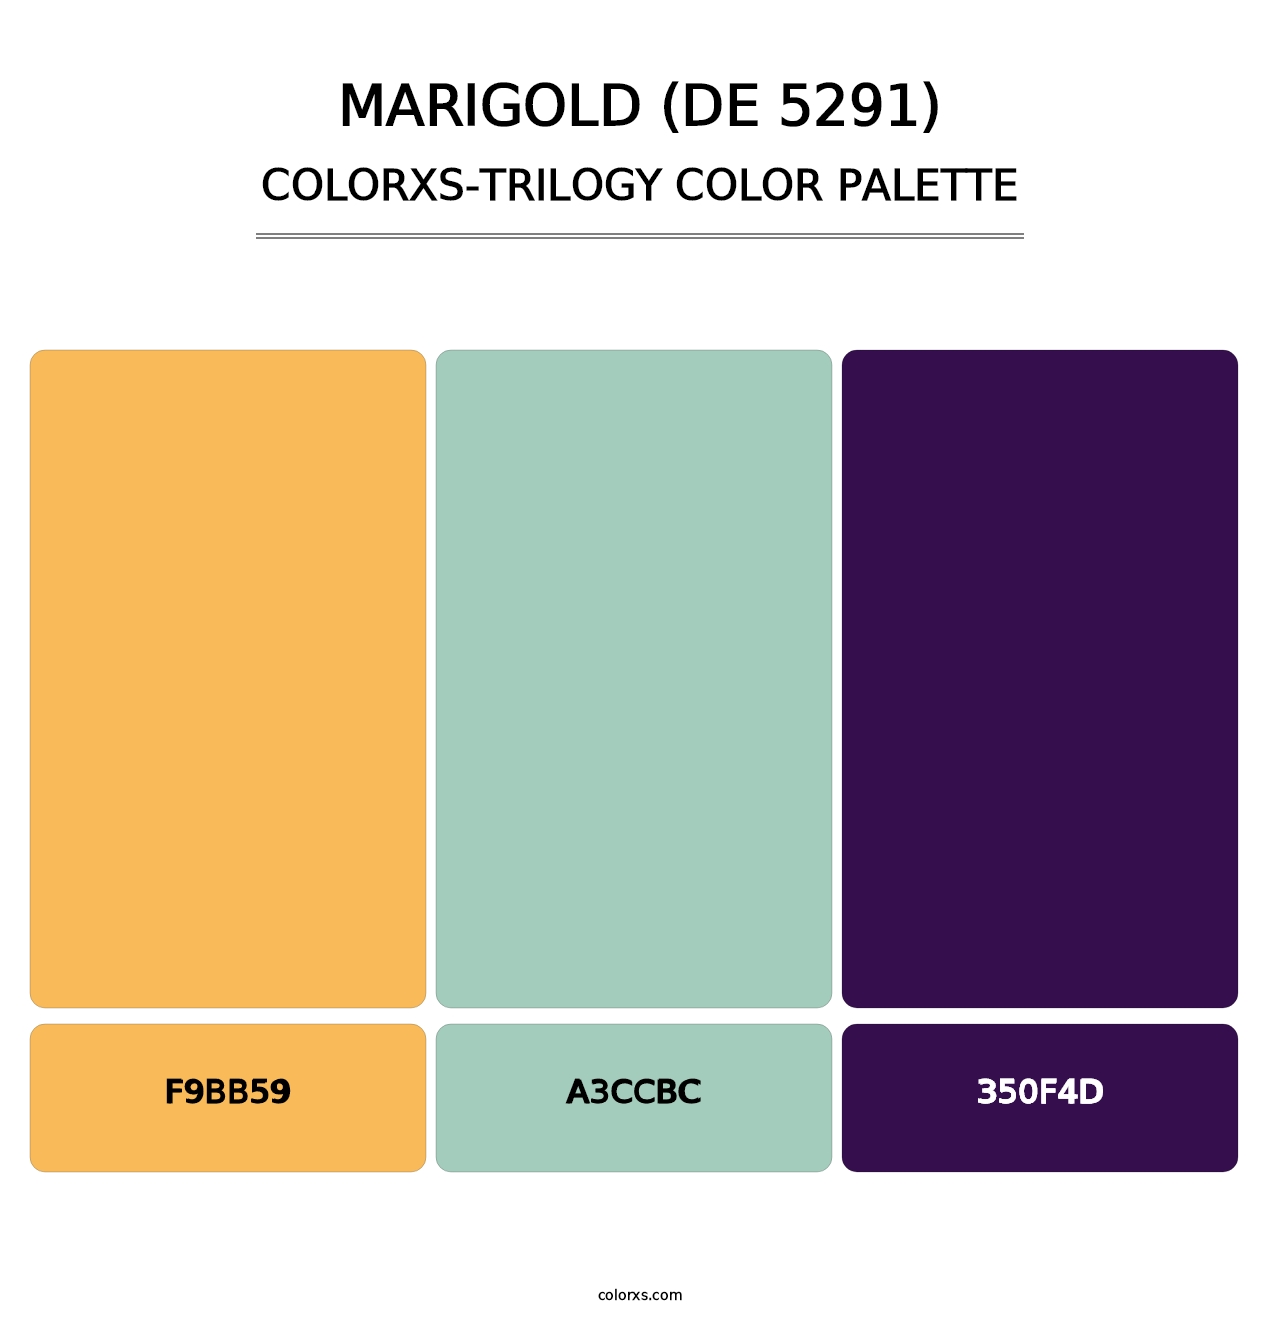 Marigold (DE 5291) - Colorxs Trilogy Palette